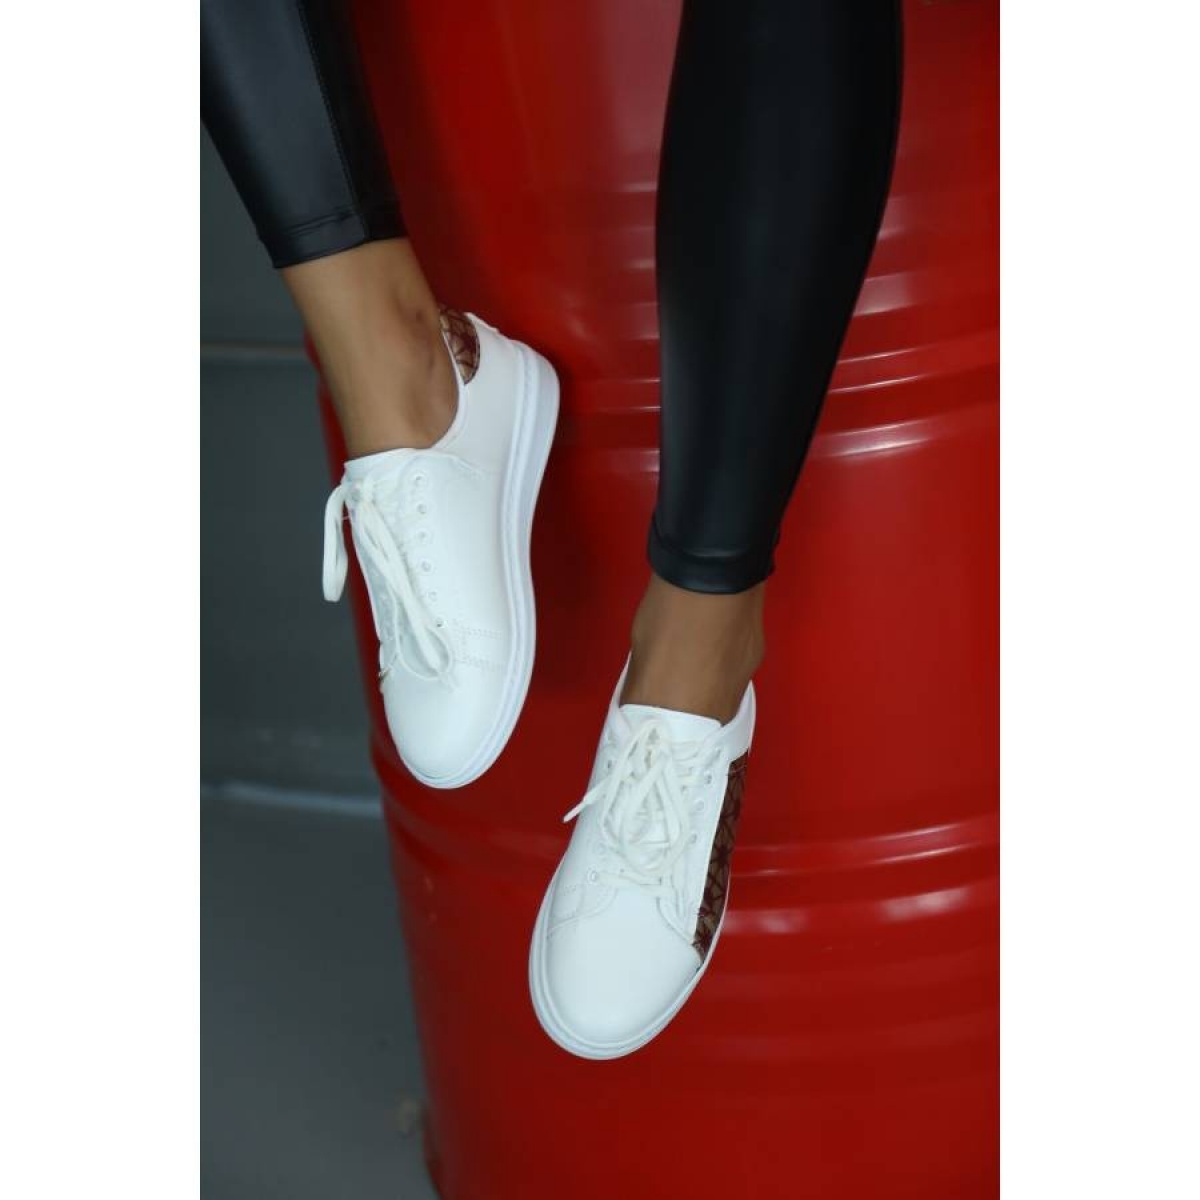 Flo Beyaz-Bordo Kadın Spor Ayakkabı 5013-20-101001. 2